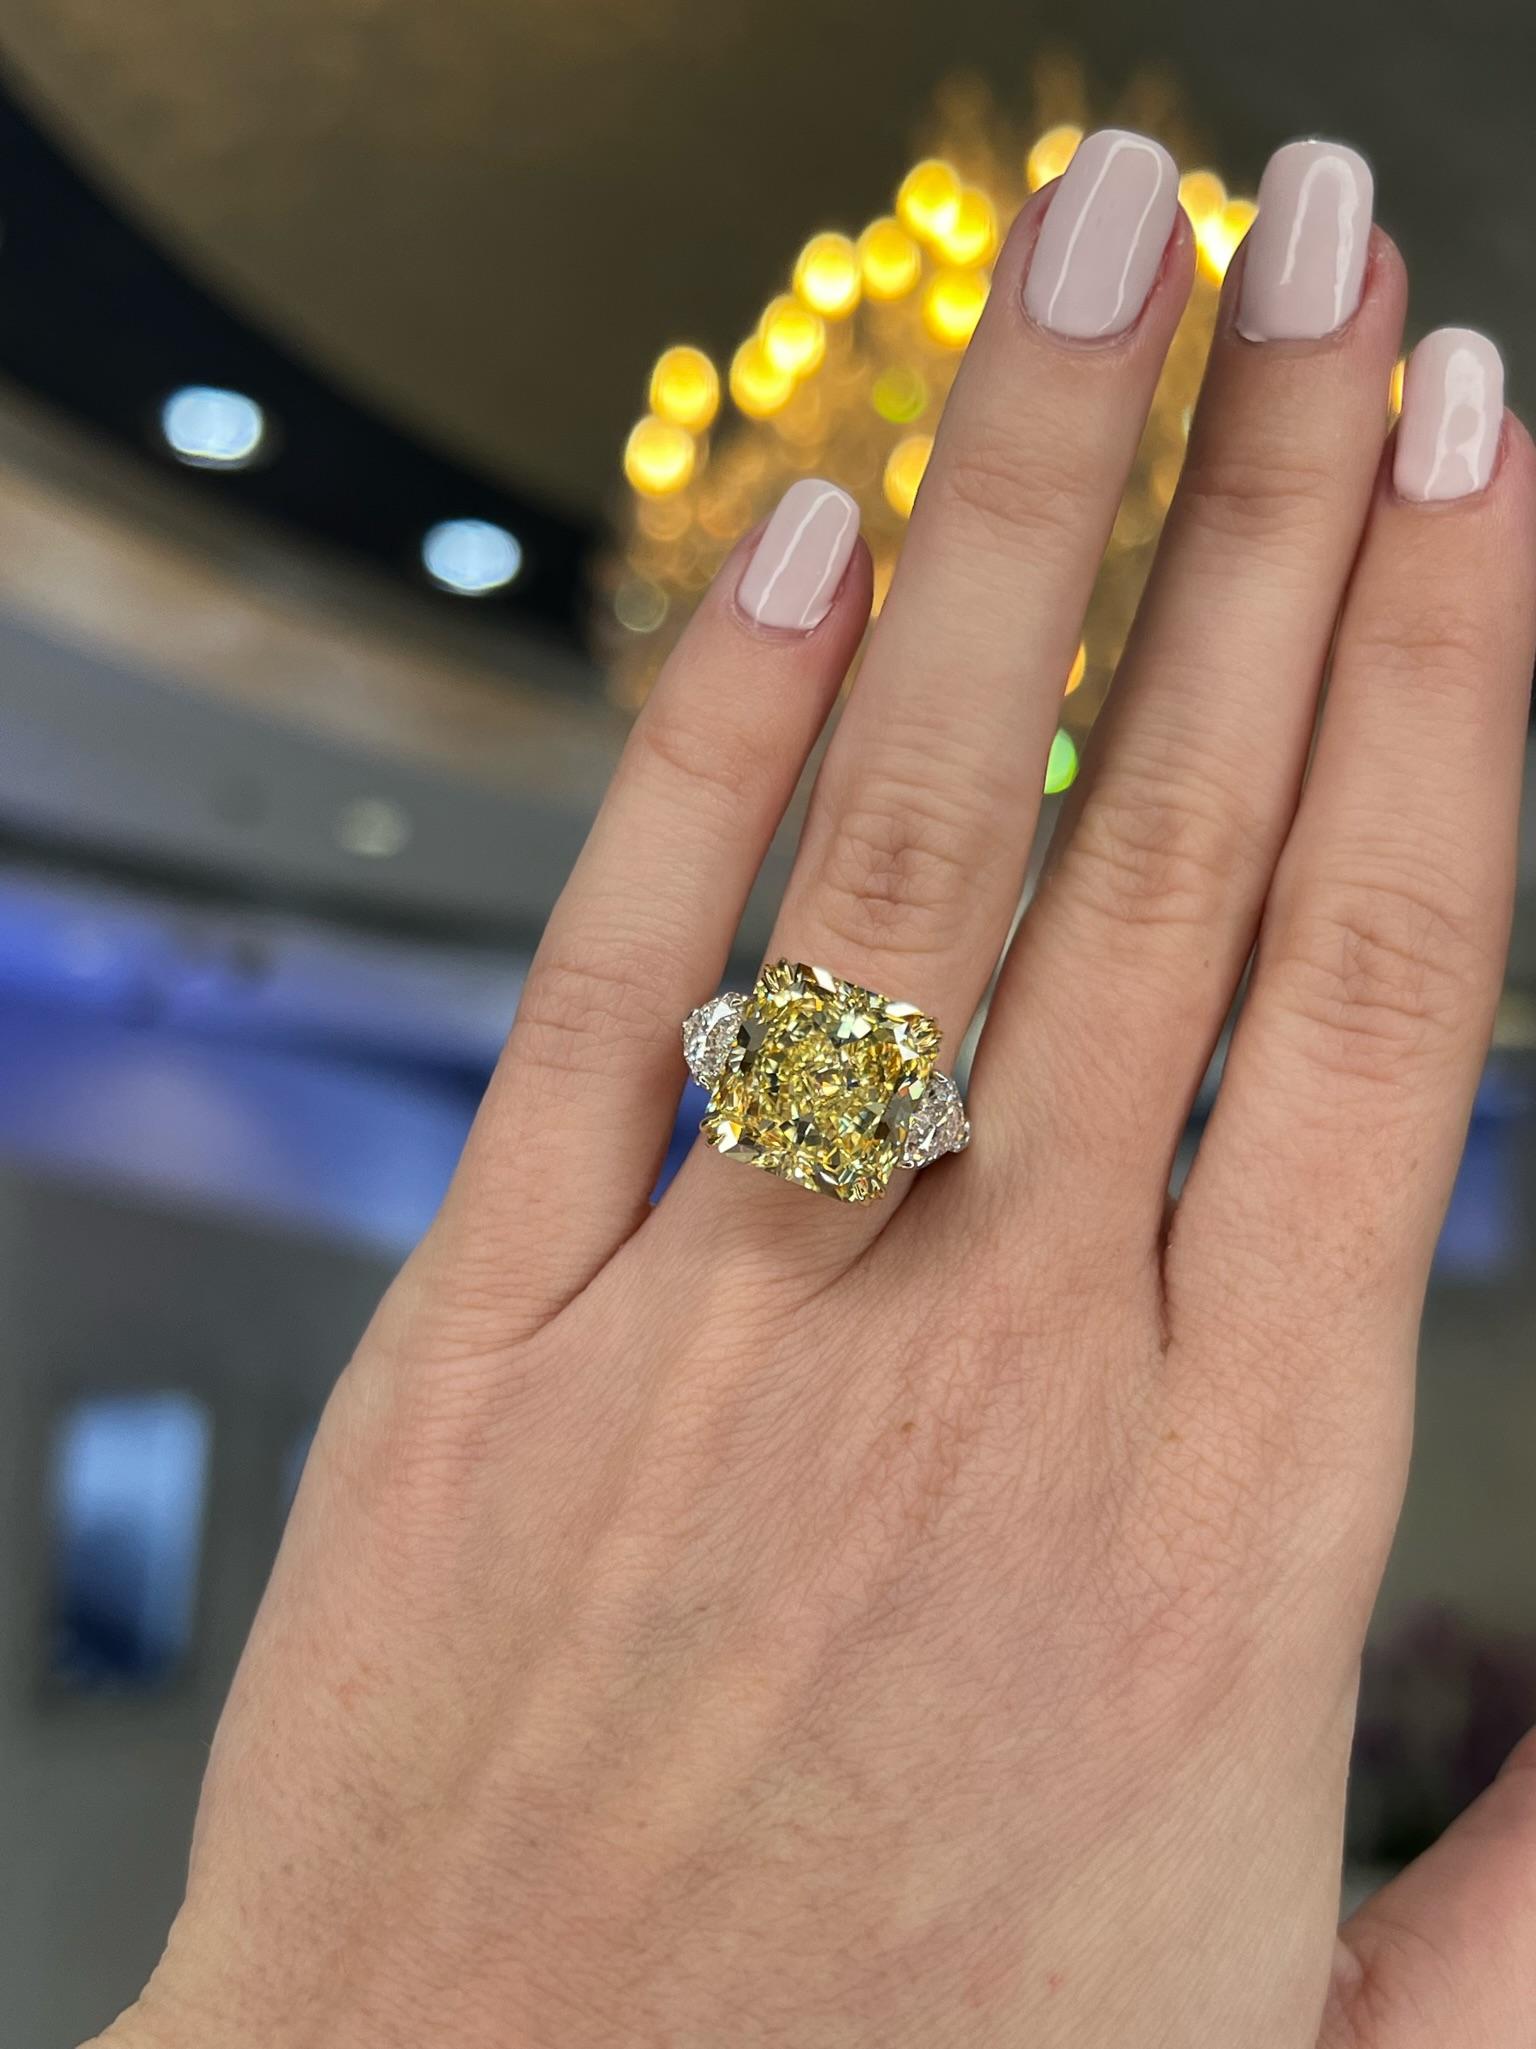 David Rosenberg 10.23 Radiant Fancy Yellow VVS1 GIA Diamond Engagement Ring For Sale 8